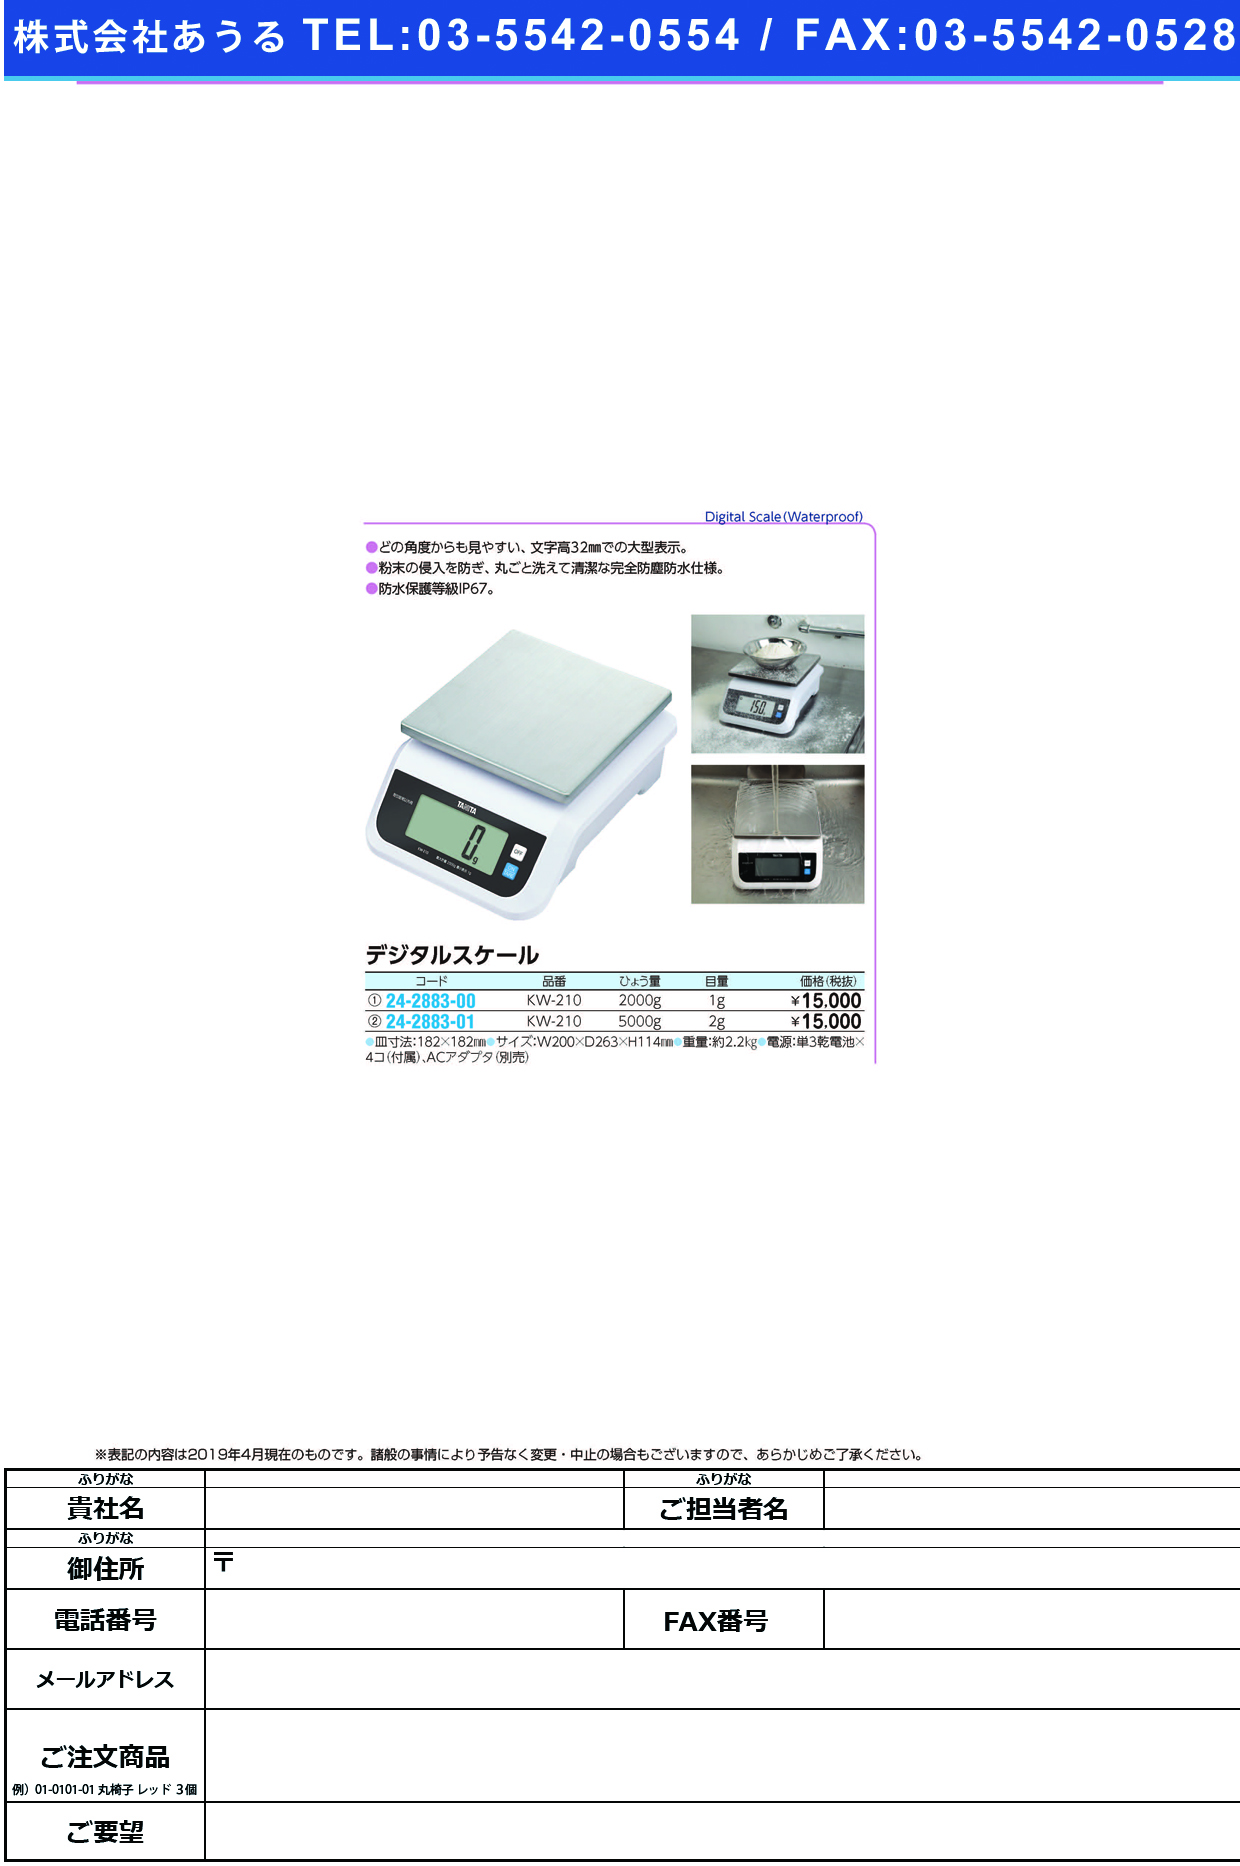 (24-2883-00)デジタルスケール KW-210(2000G) ﾃﾞｼﾞﾀﾙｽｹｰﾙ(タニタ)【1台単位】【2019年カタログ商品】